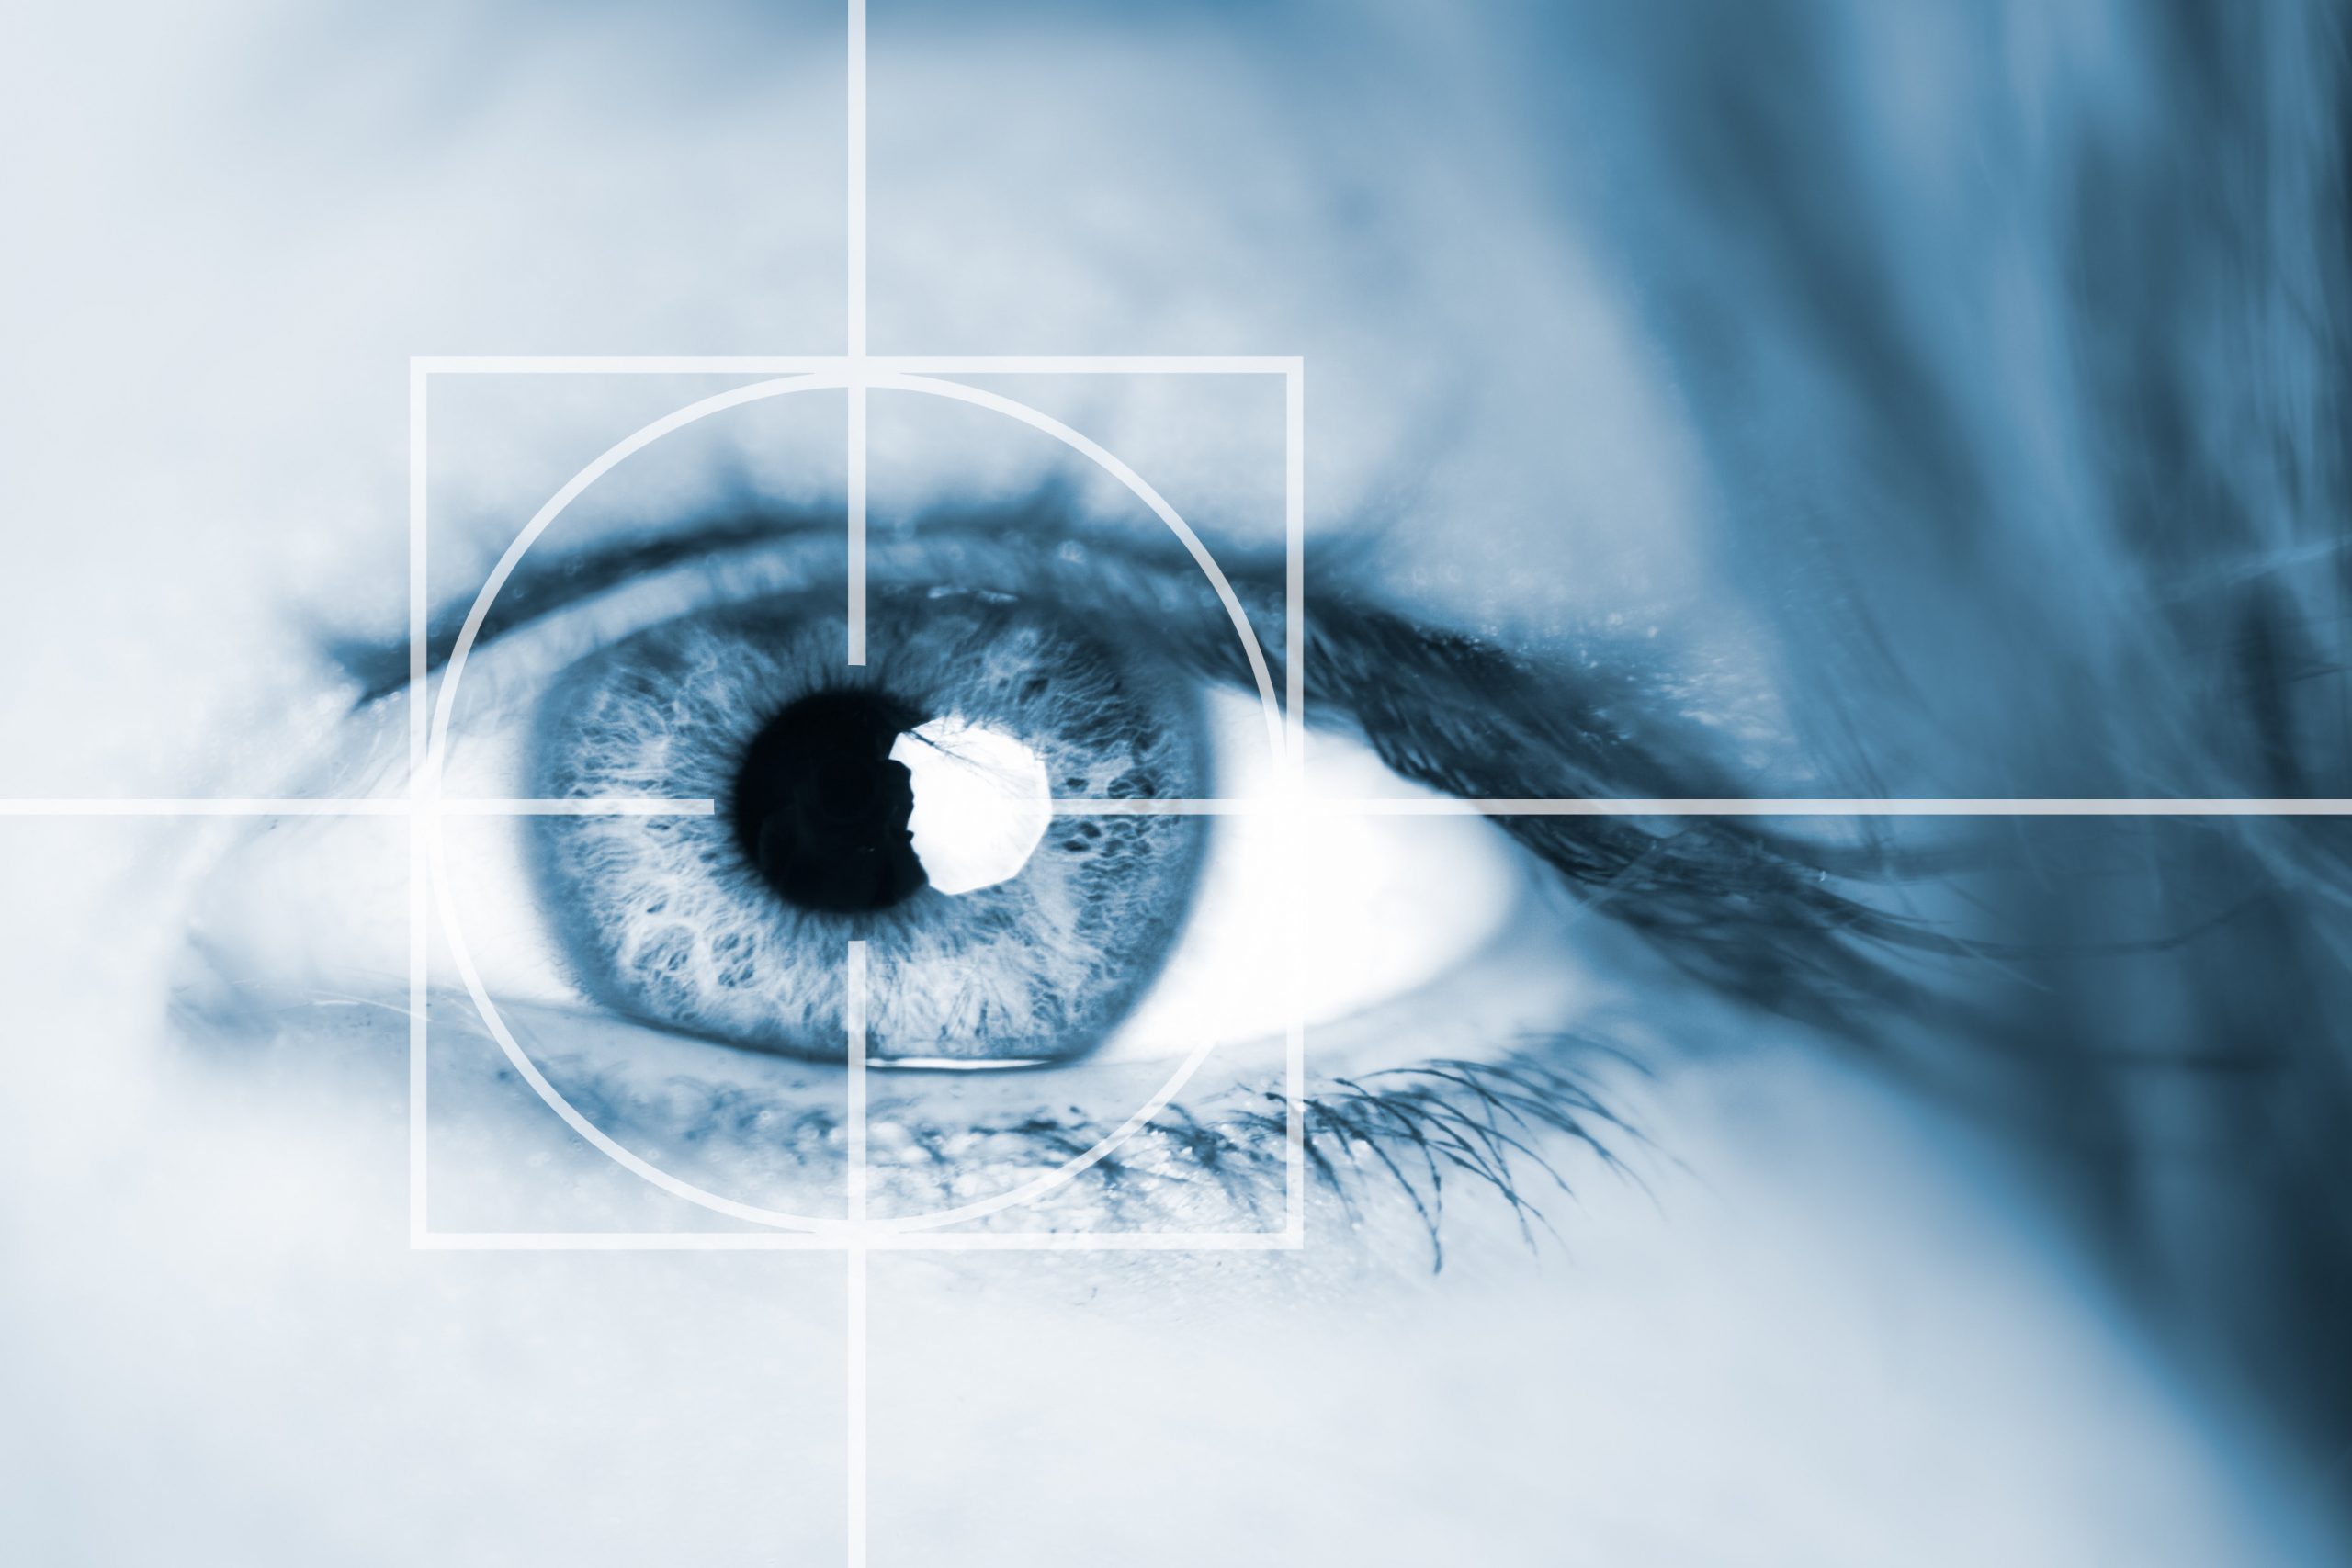 Femtolasik: a nova geração da cirurgia de correção da visão